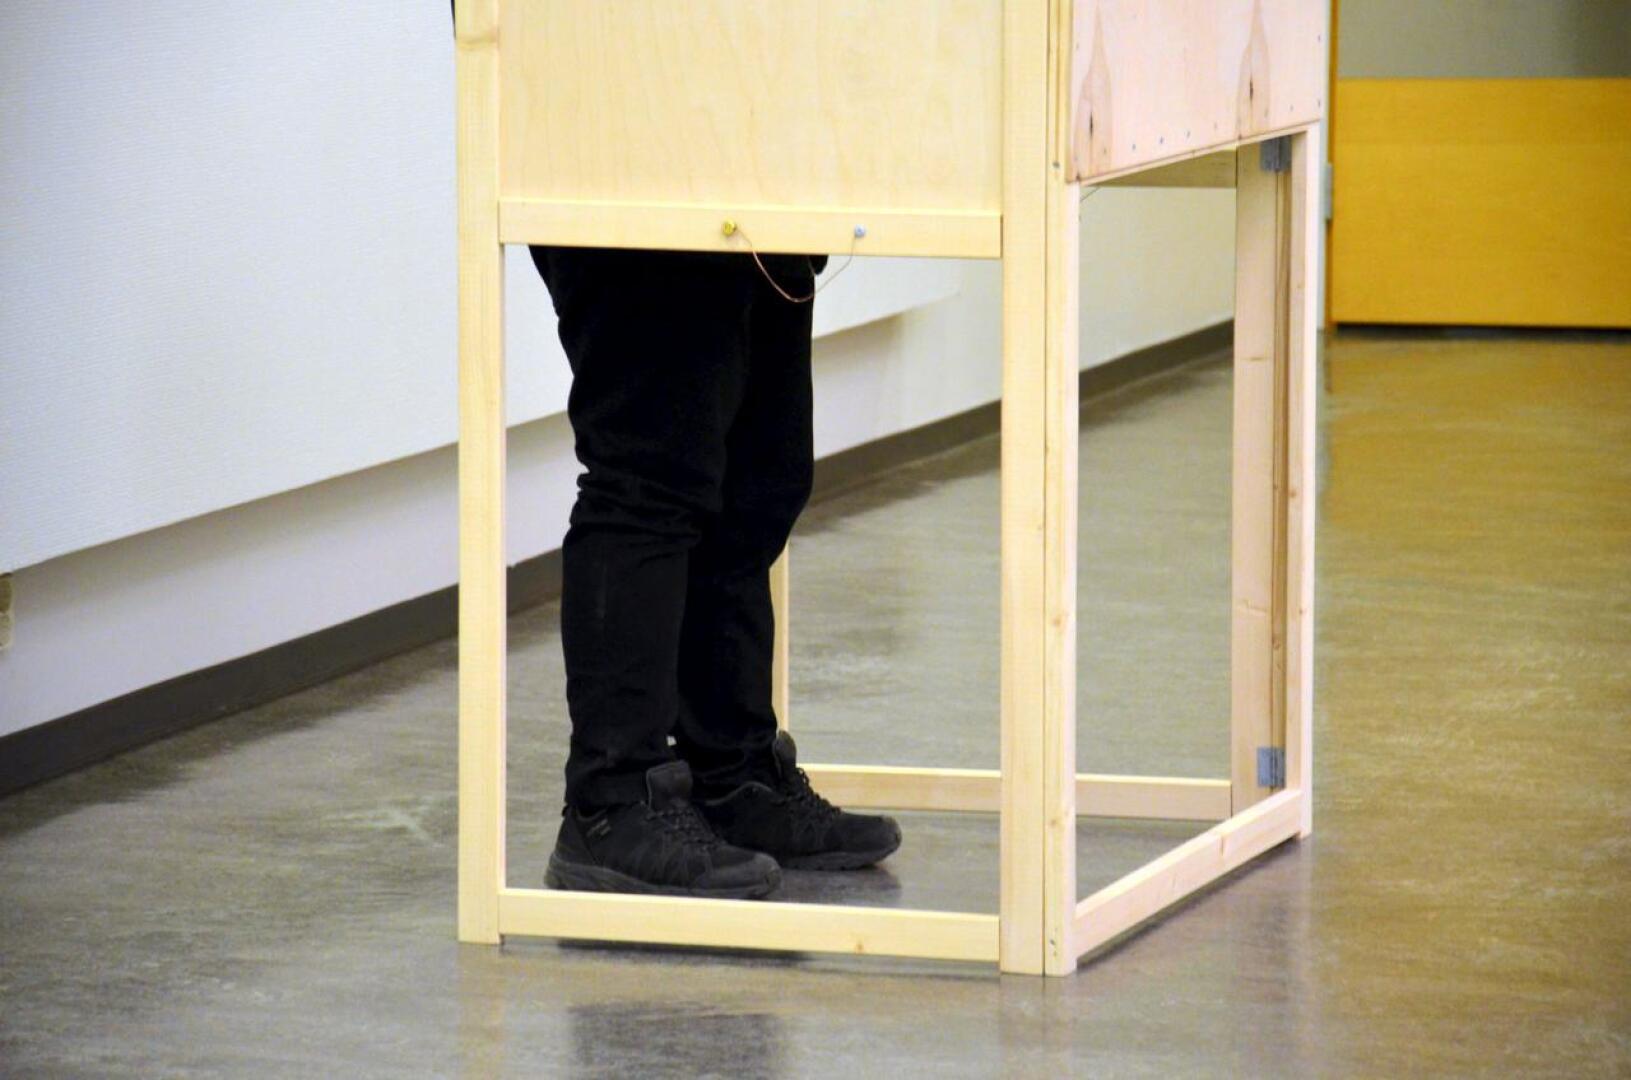 Suomen 39. eduskuntavaalit järjestetään sunnuntaina 2. huhtikuuta 2023, ja niissä valitaan kansanedustajat eduskuntaan vaalikaudelle 2023–2027.